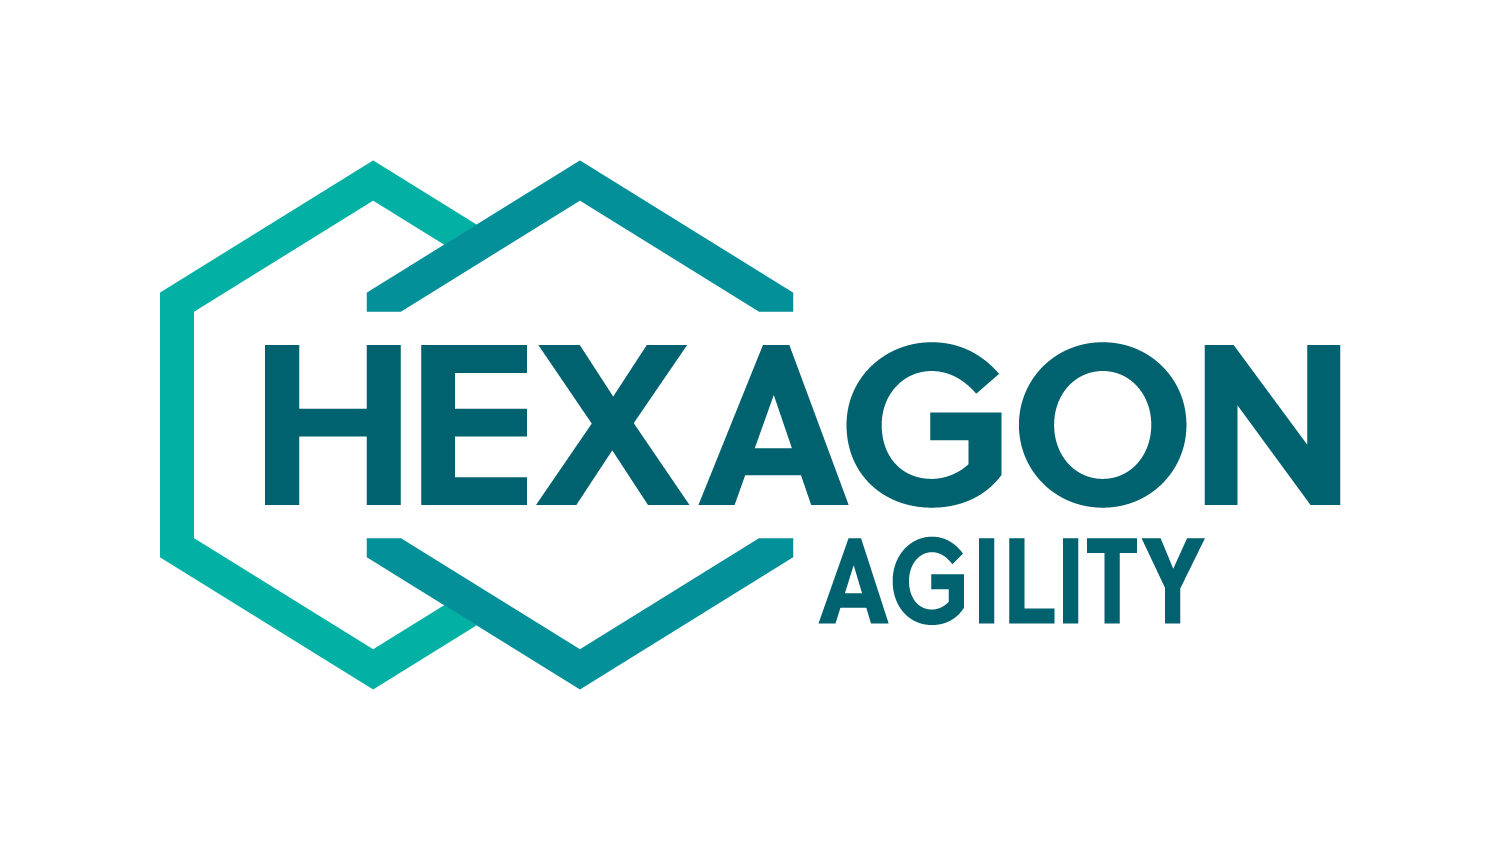 Hexagon Agility Prov